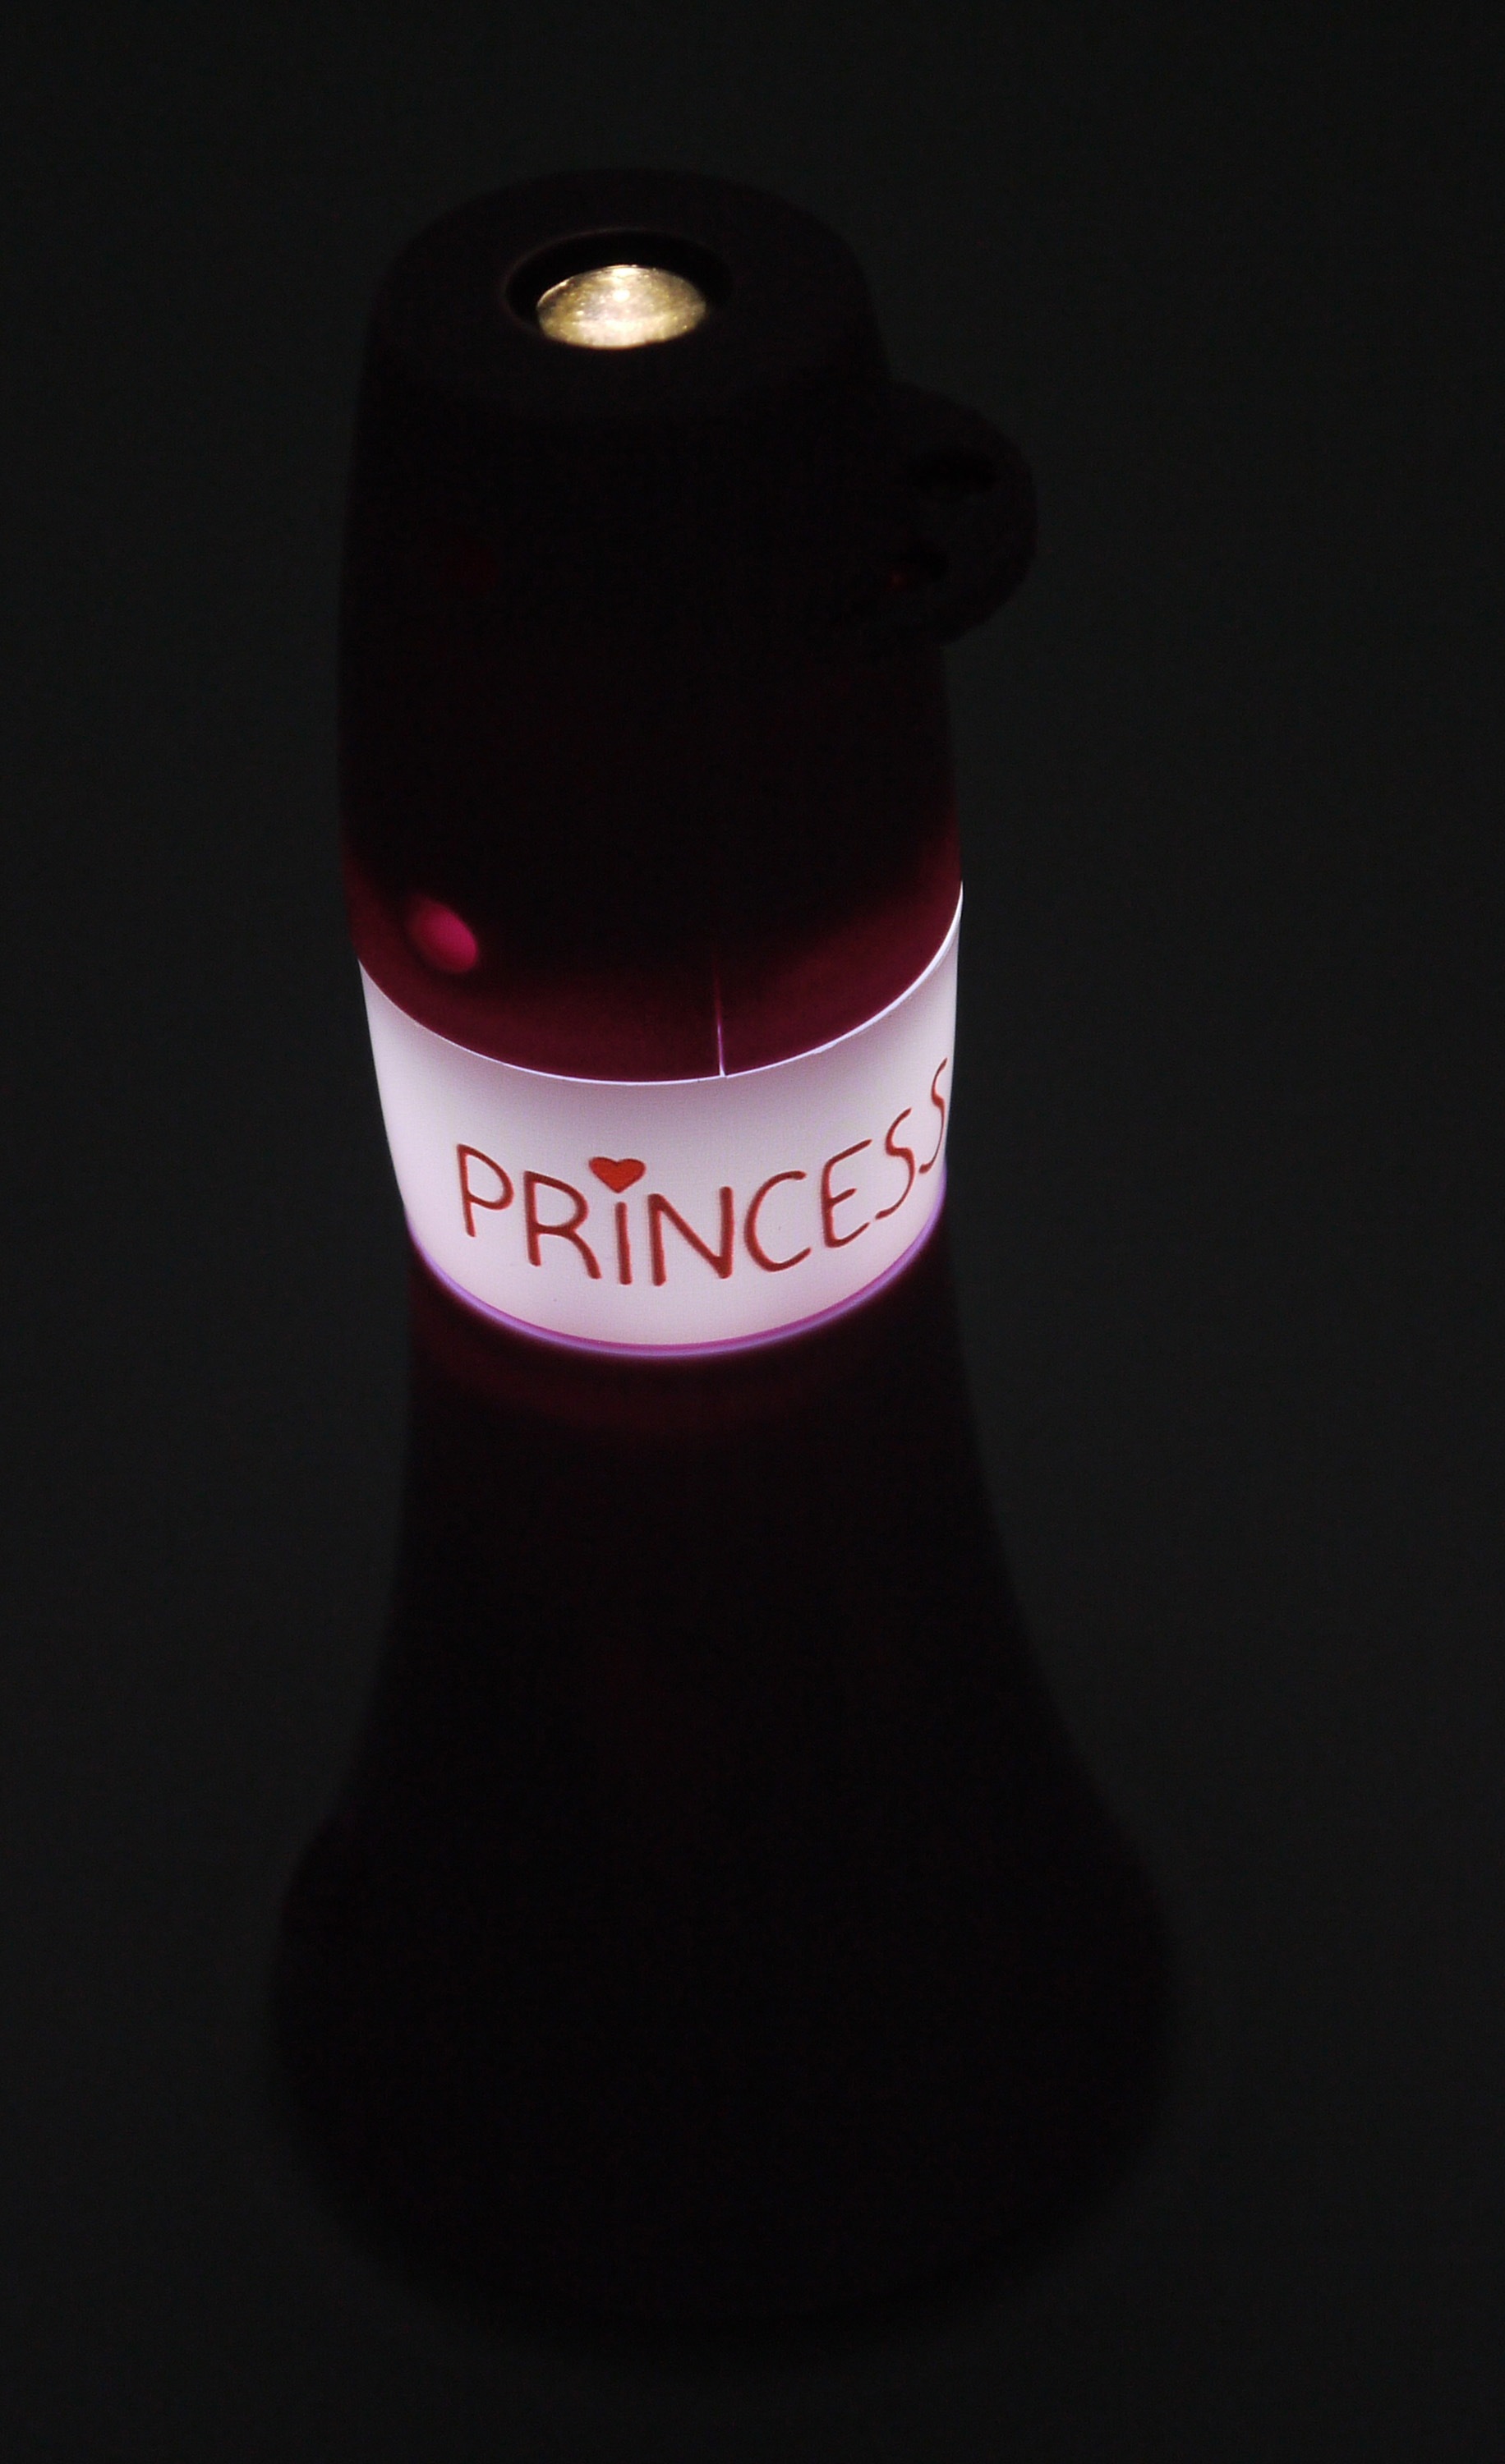 kaufen online »Prinzessin«, Prinzessin x XXL Nachtlicht (1 x 1 niermann | flammig-flammig, Stecker-Nachtlicht, Set 3 Jahren Taschenprojektor) LED mit 1 Garantie 1